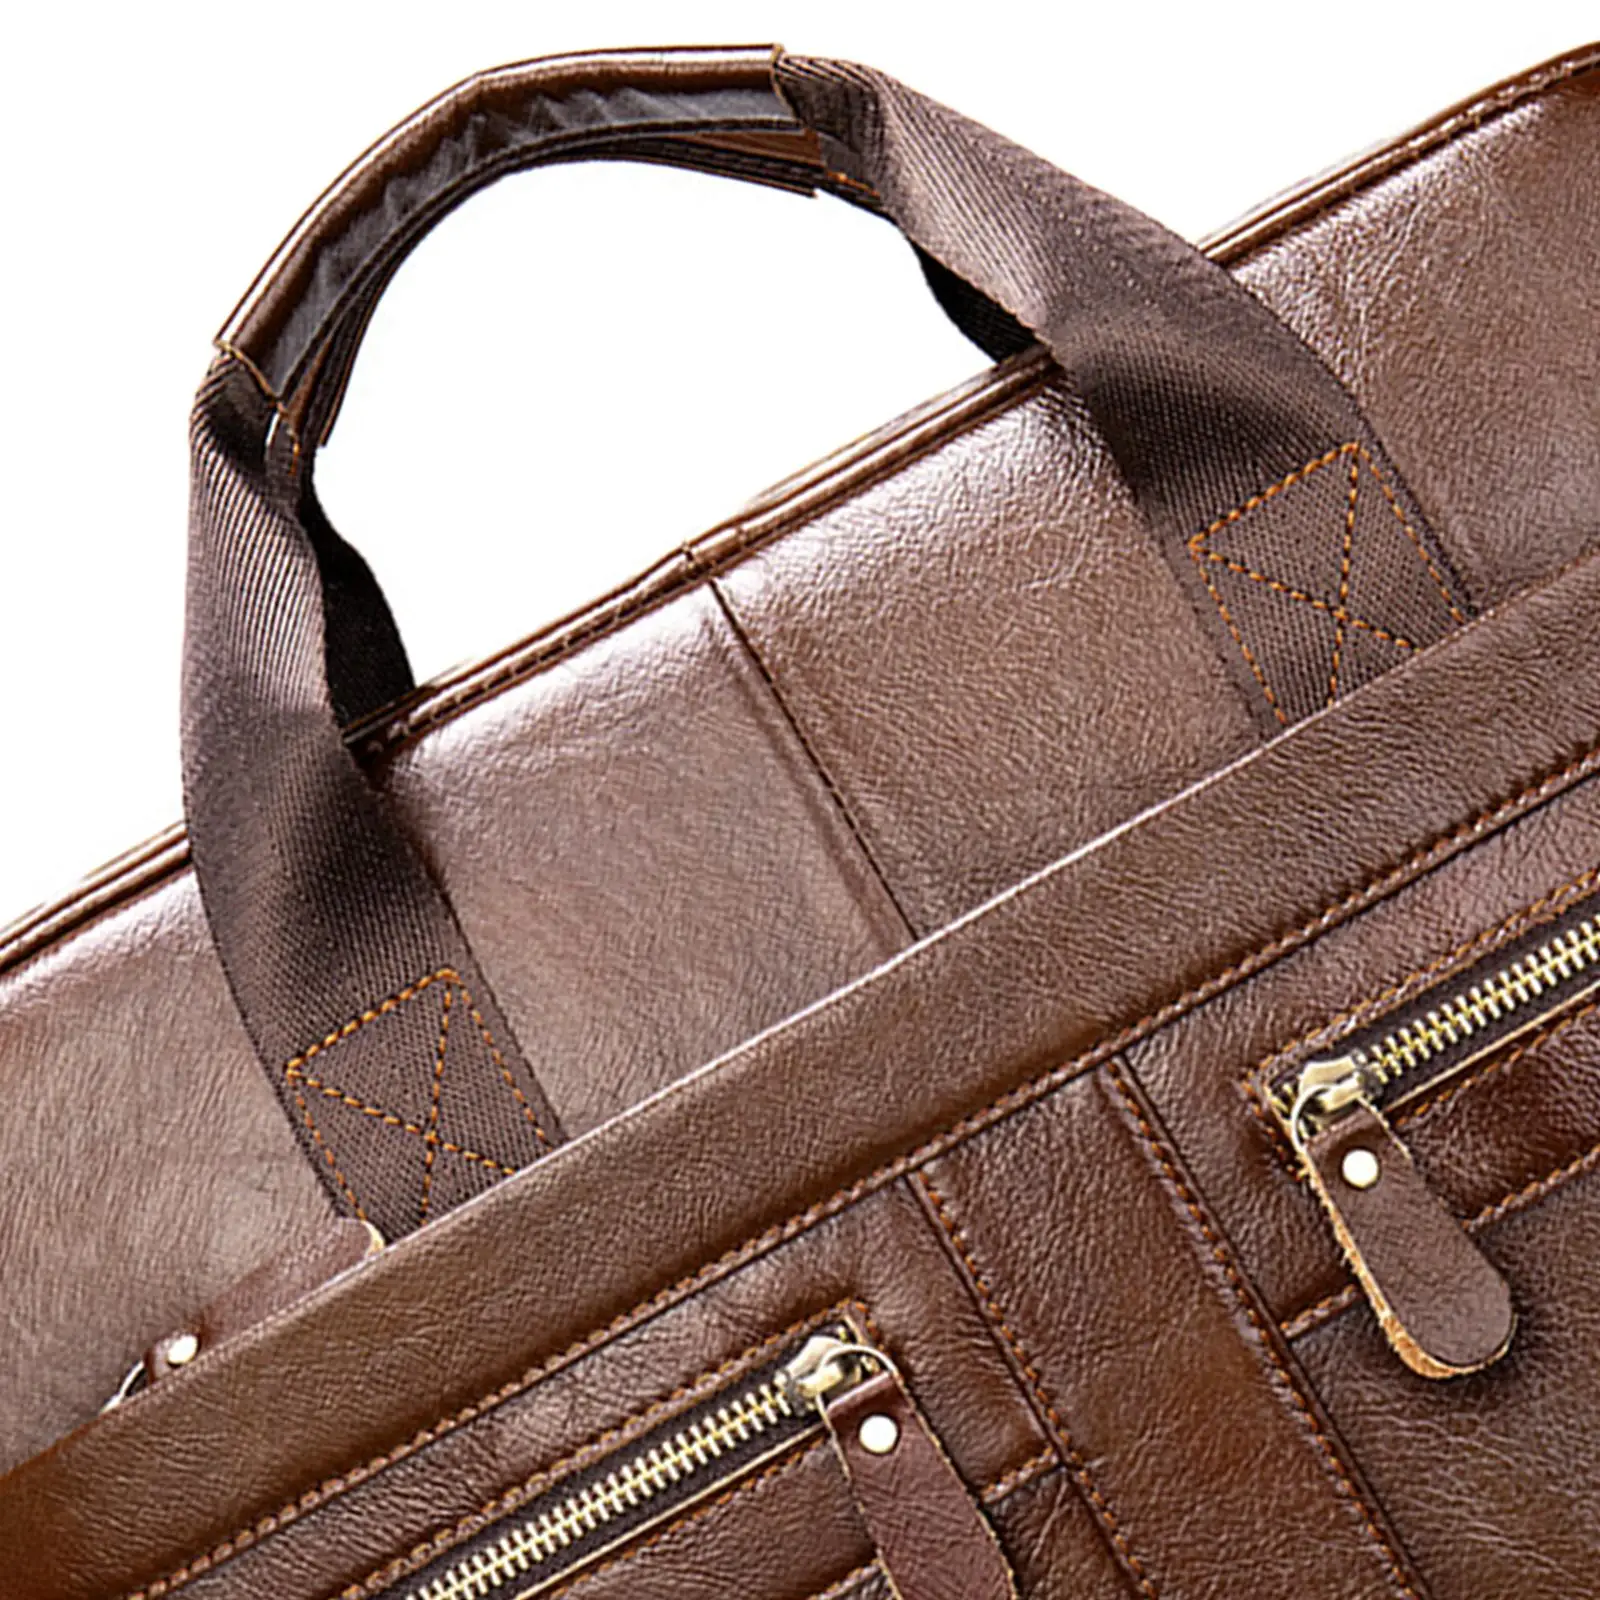 Men Leather Business Briefcase Bag Handbag Laptop Shoulder Bag Travel Office